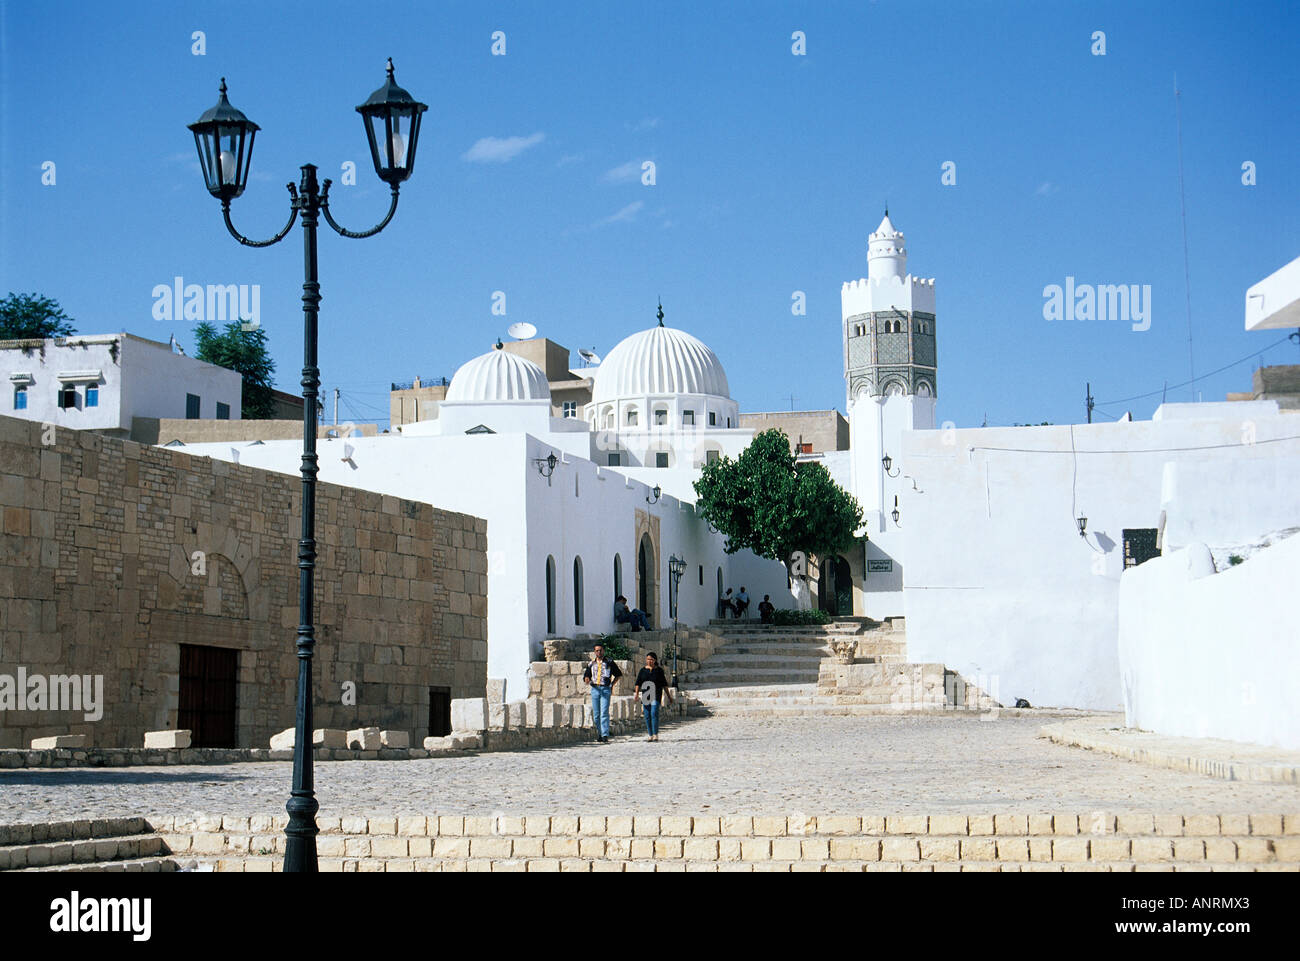 Au-dessus de l'ancienne mosquée escaliers usés l'approche des murs blanchis à la chaux étincelant de la mosquée de Sidi Bou Makhlouf avec sa paire de dômes sculptés et minaret octogonal Banque D'Images